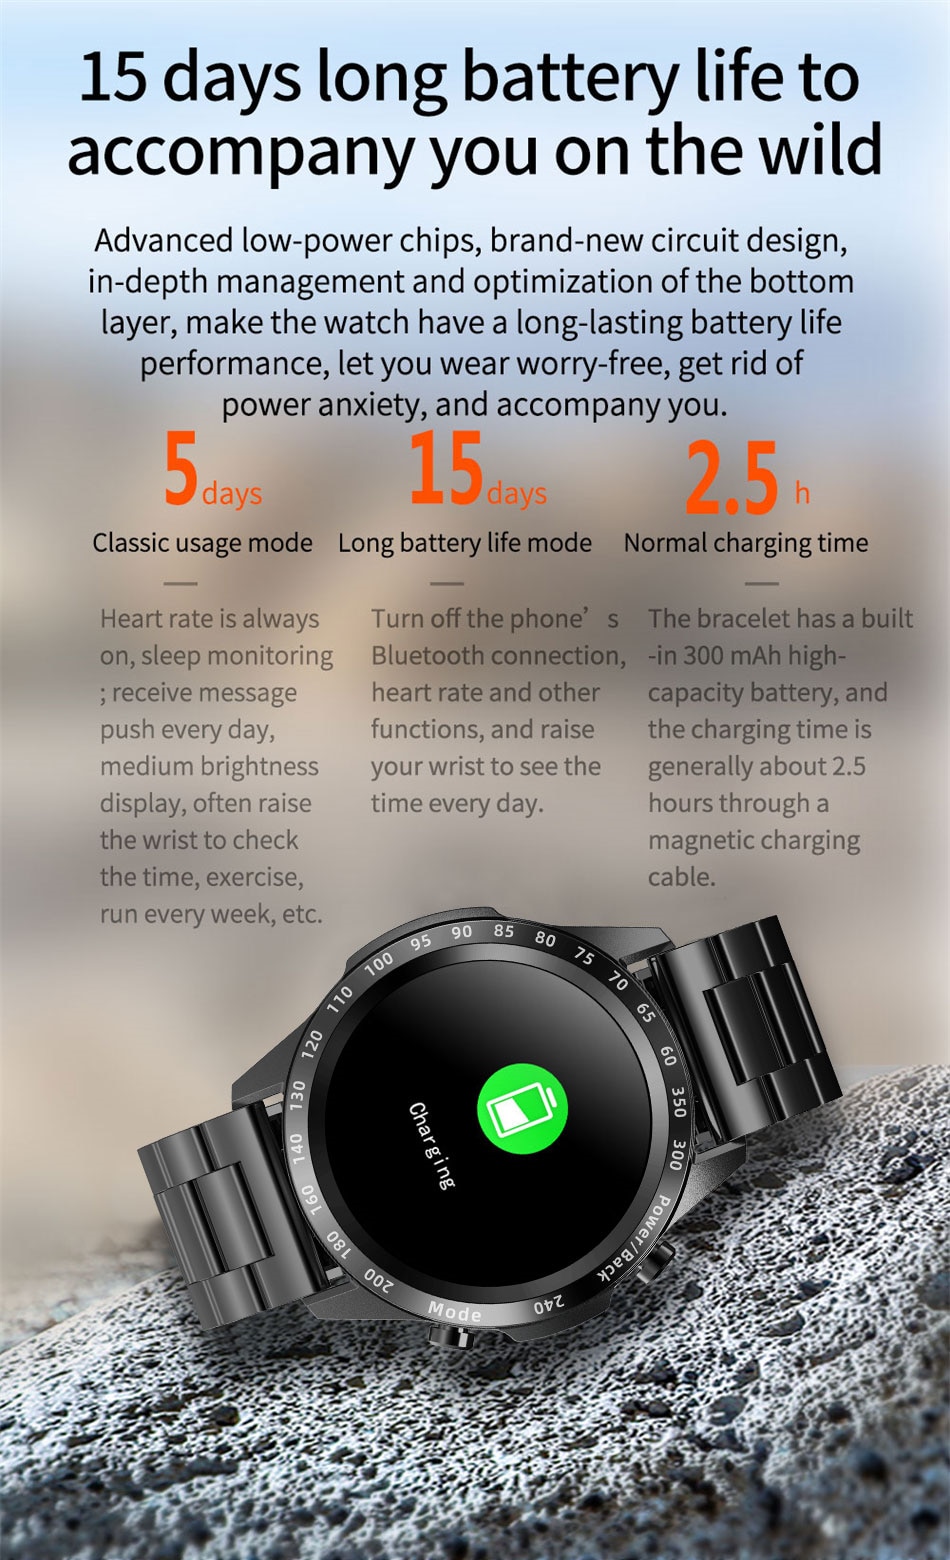 LIGE Turbo v1.0 - LG261 IP68 Waterproof Smart Watch